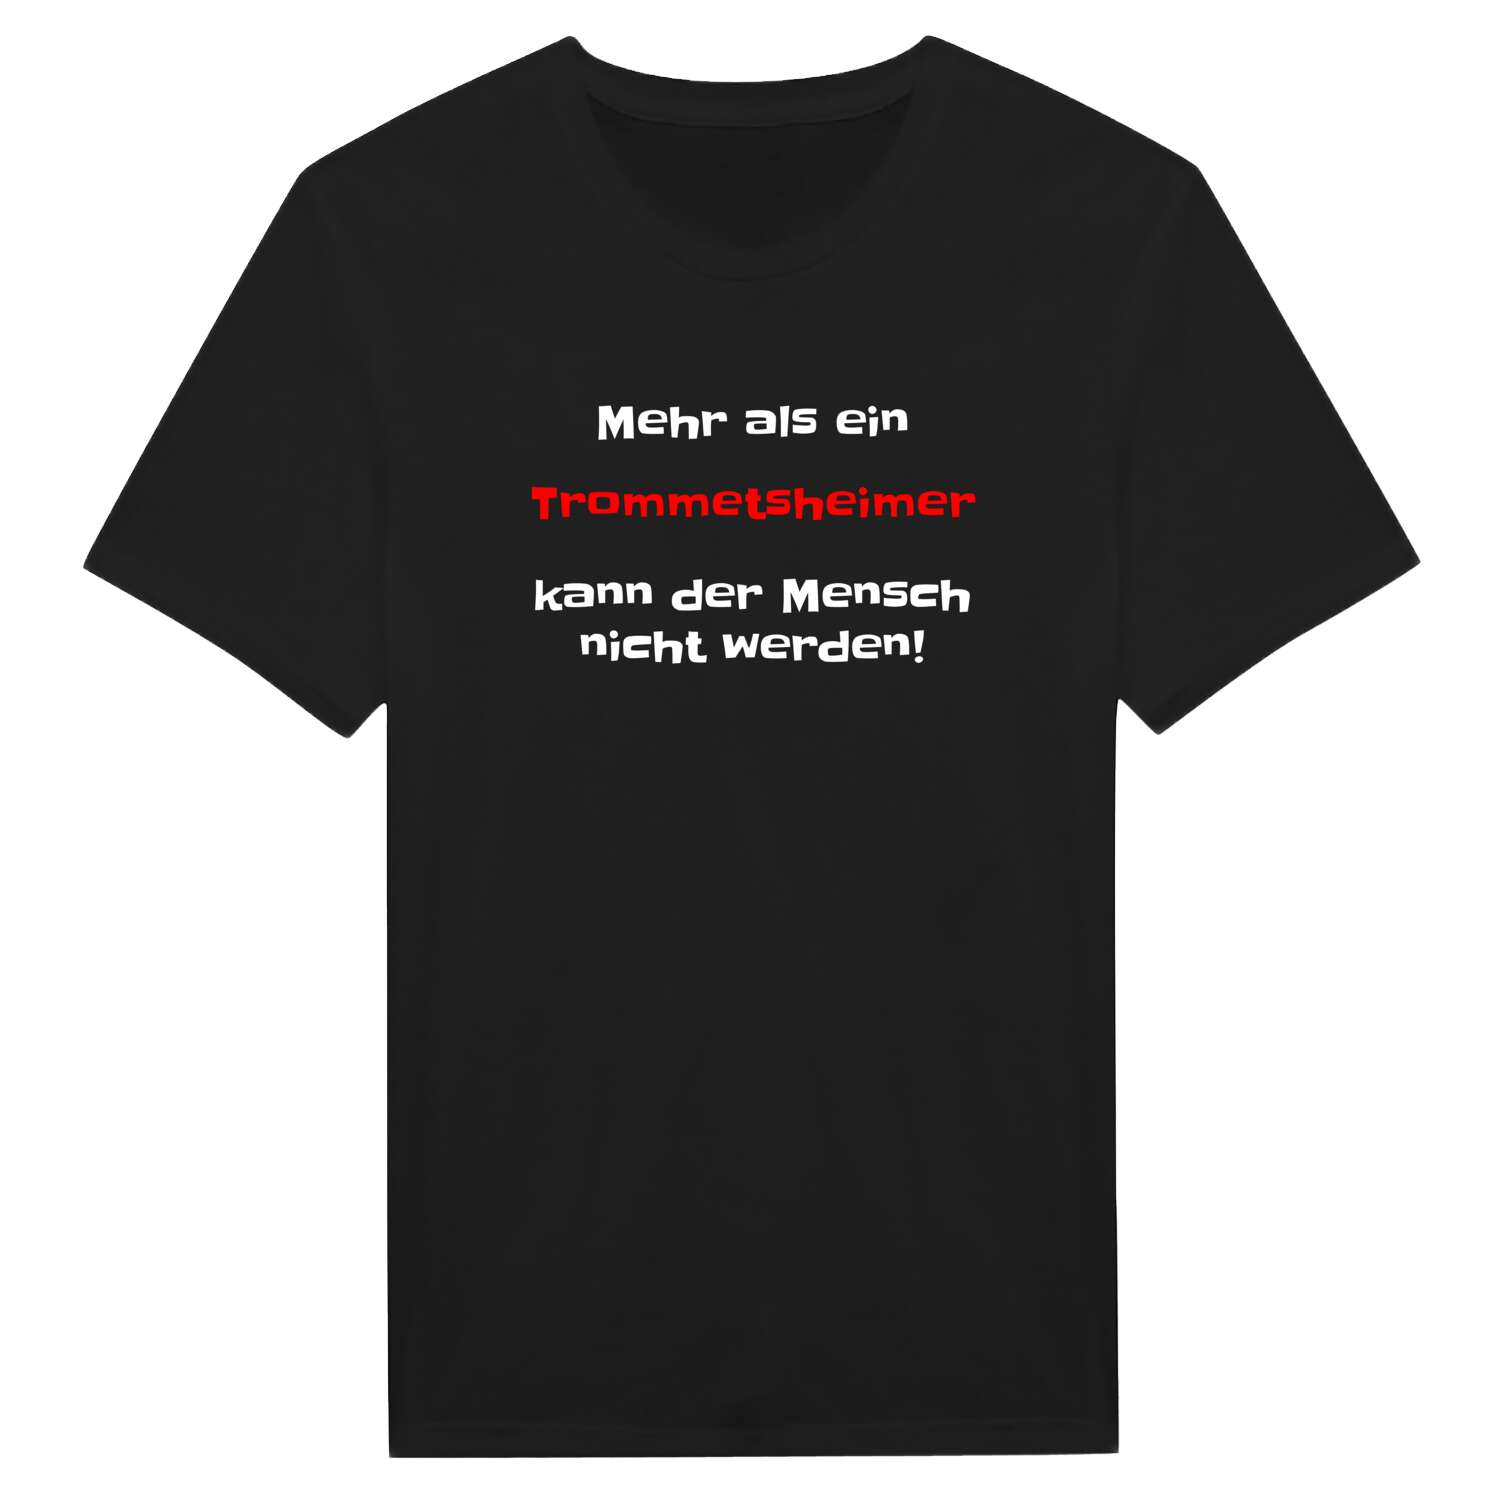 Trommetsheim T-Shirt »Mehr als ein«